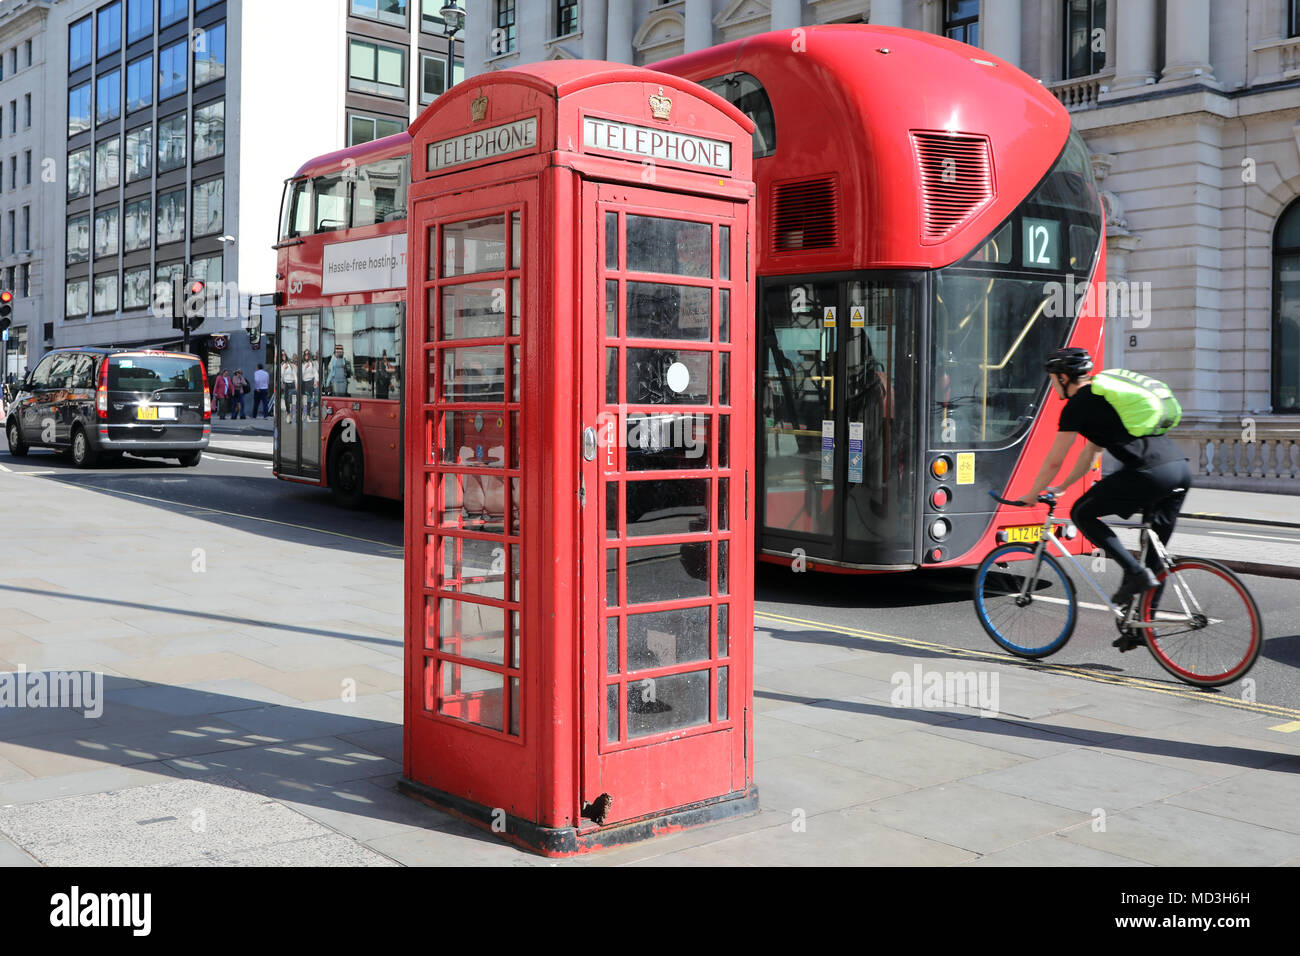 London, Großbritannien. 18. April 2018. Eine rote Telefonzelle am Waterloo Place, London, mit einem traditionellen roten London Bus und ein Radfahrer vorbei, am 18. April, 2018 Quelle: Dominic Dudley/Alamy leben Nachrichten Stockfoto